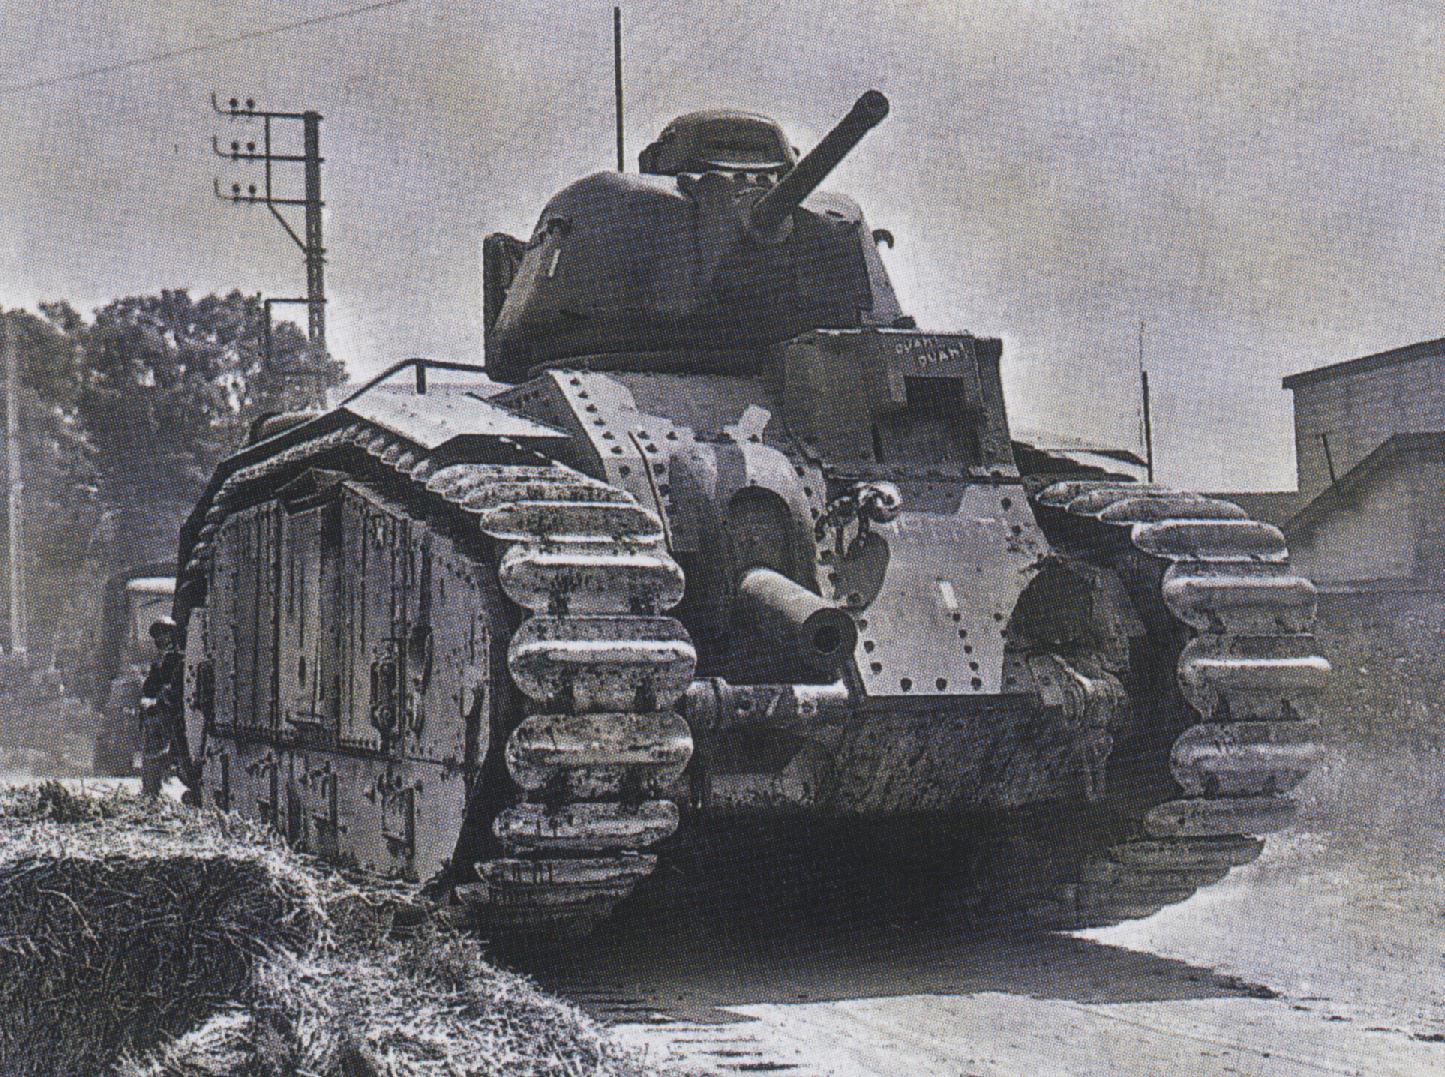 Wo tank. Тяжелый французский танк Char b1. Французский танк в1 второй мировой войны. Французский танк b1 bis. Char b1 bis танк.